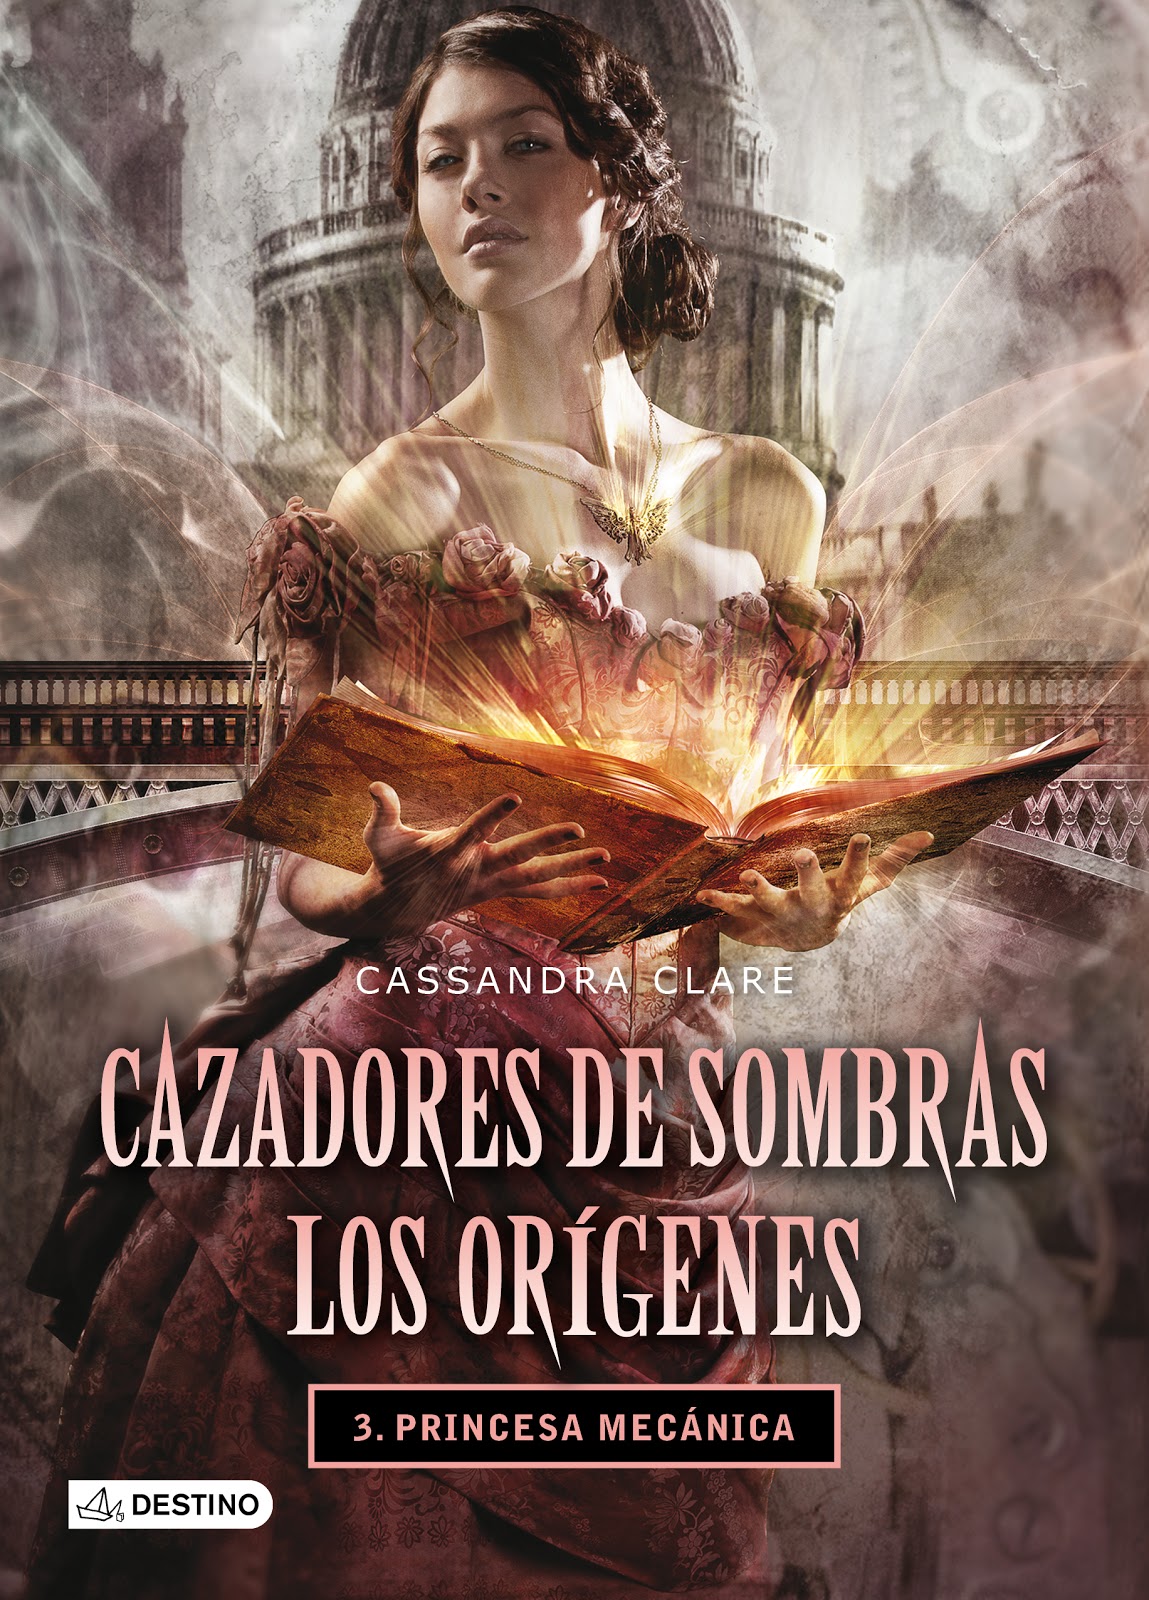 Libro de audio Cazadores de sombras: los orígenes: La princesa mecánica [3] – Cassandra Clare